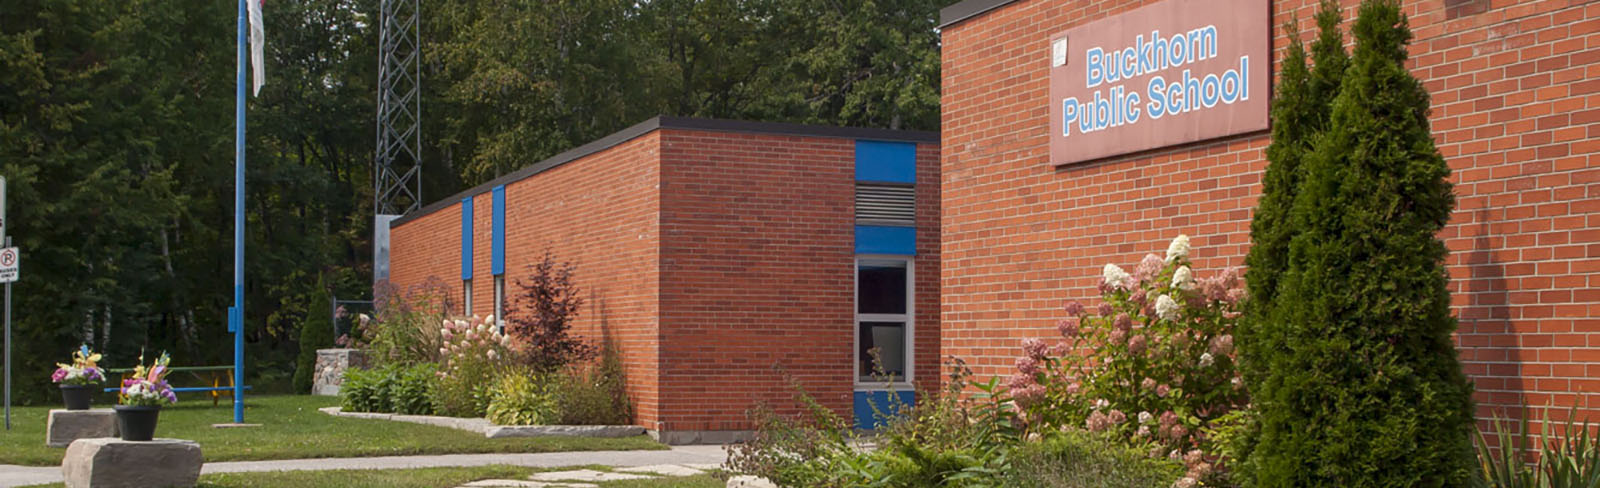 image of Buckhorn Public School